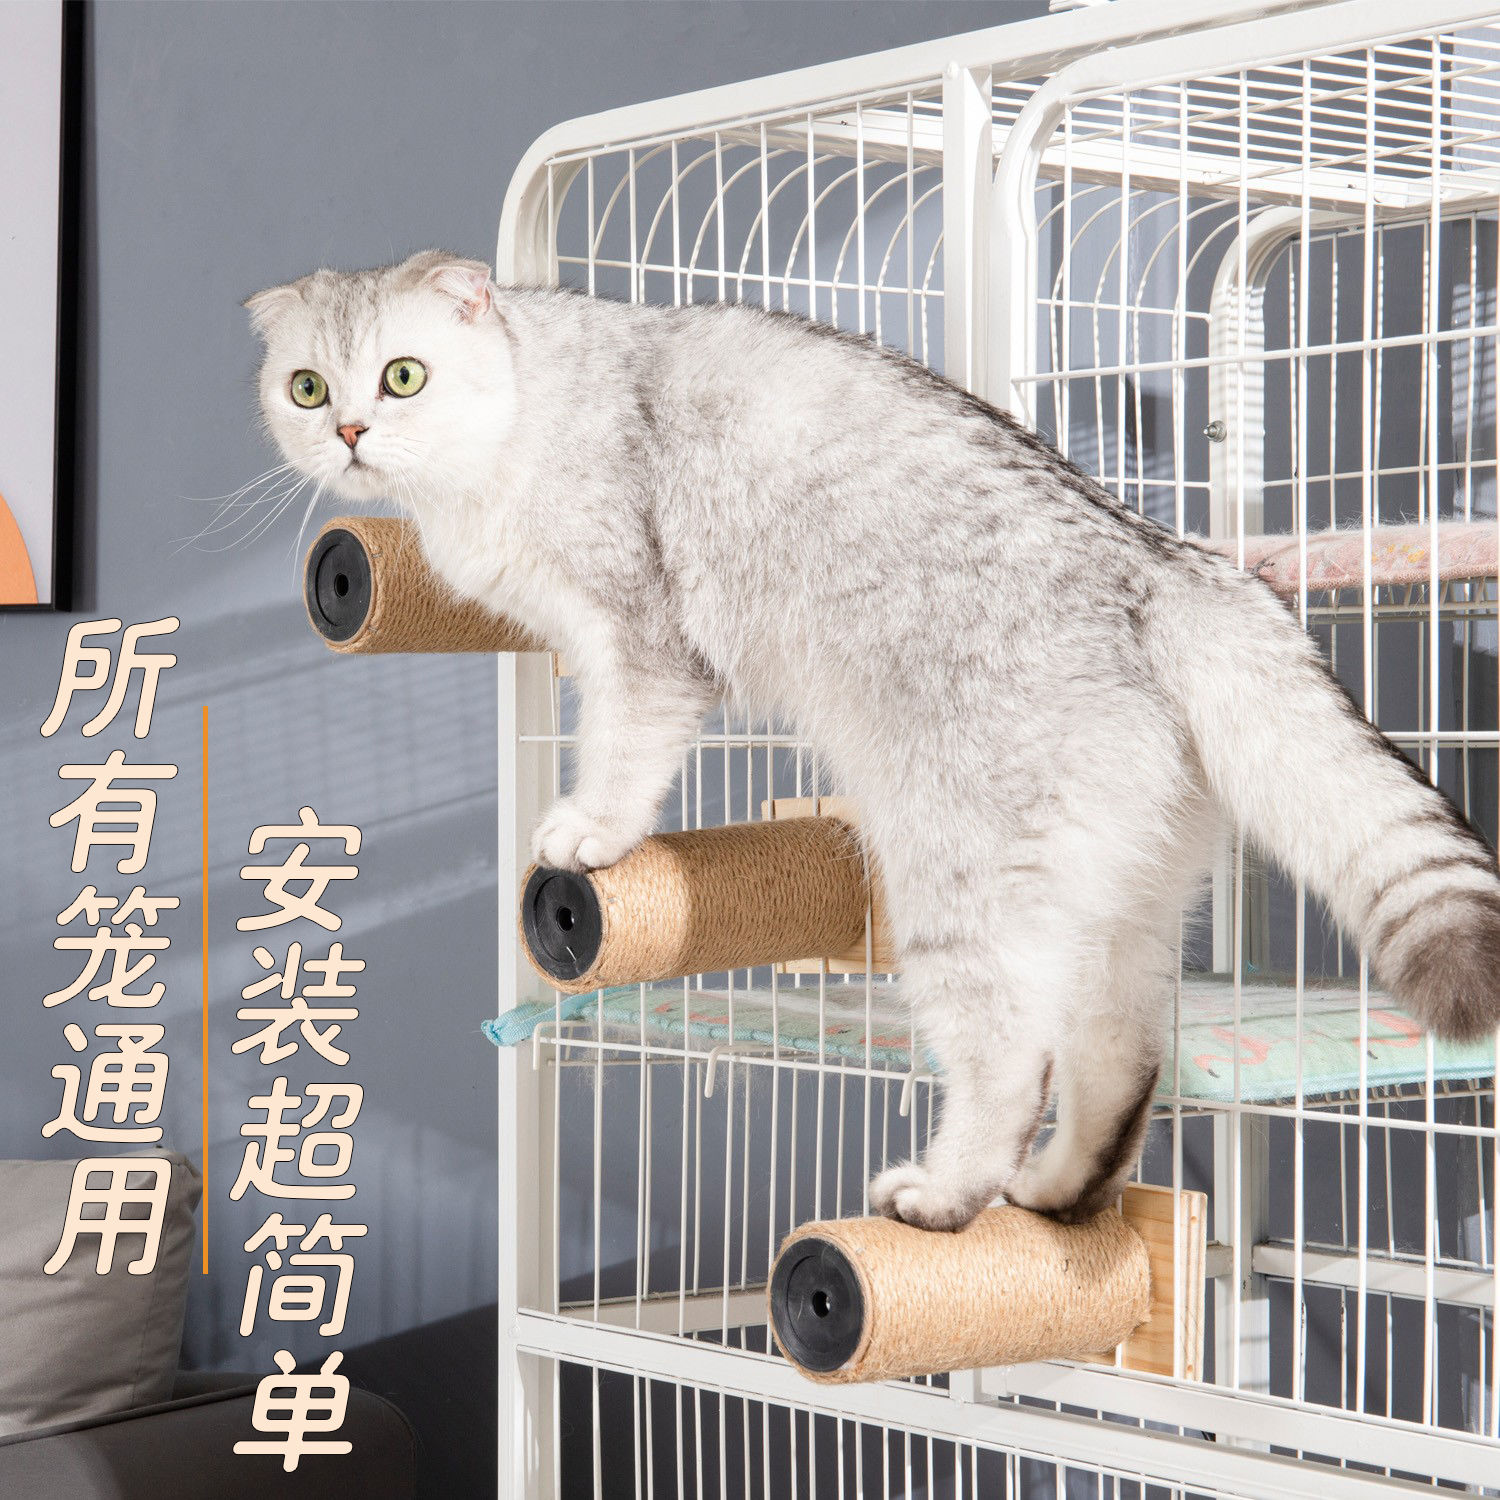 猫笼剑麻猫抓板猫爬架楼梯平台黄麻猫抓柱多层攀爬猫咪玩具猫用品